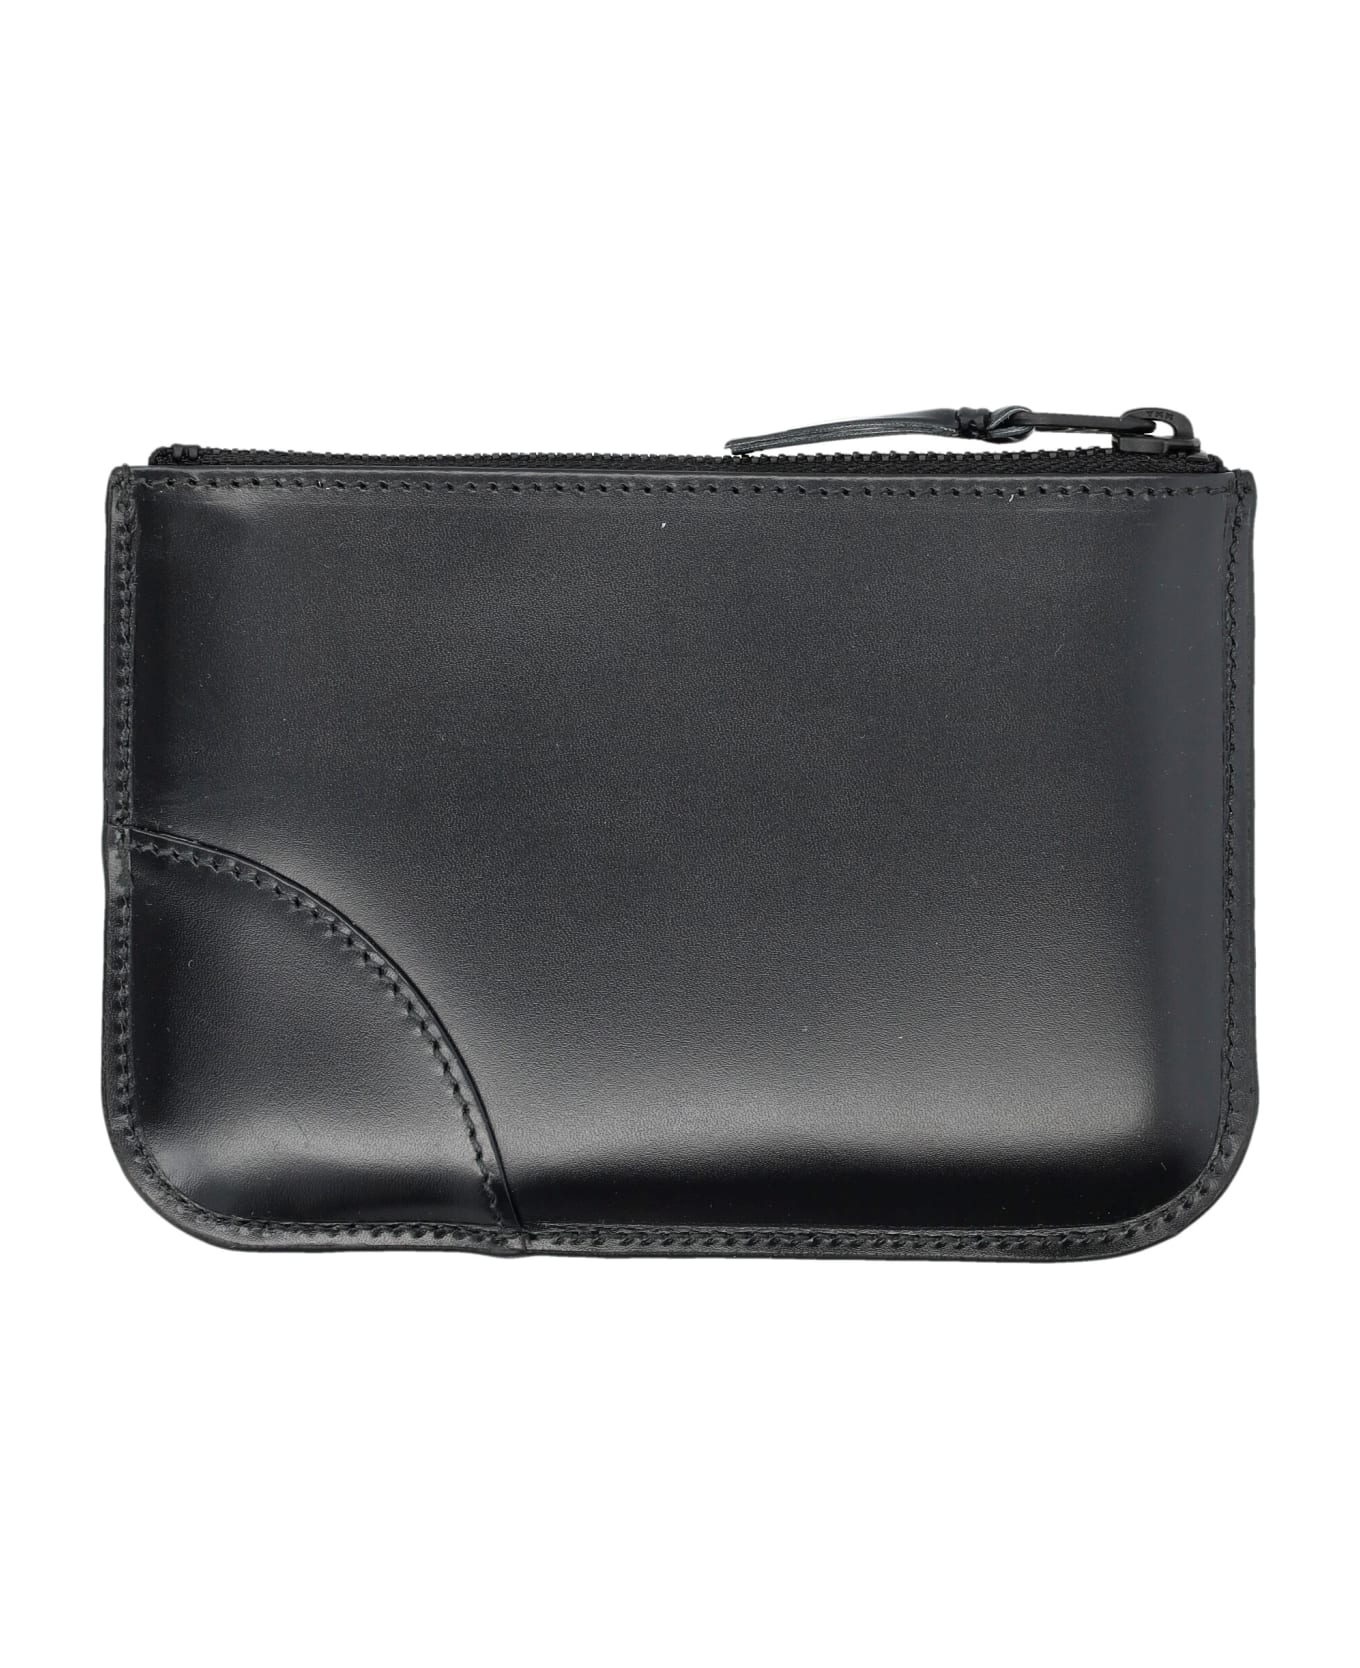 Comme des Garçons Wallet Xsmall Classic Leather Pouch - BLACK